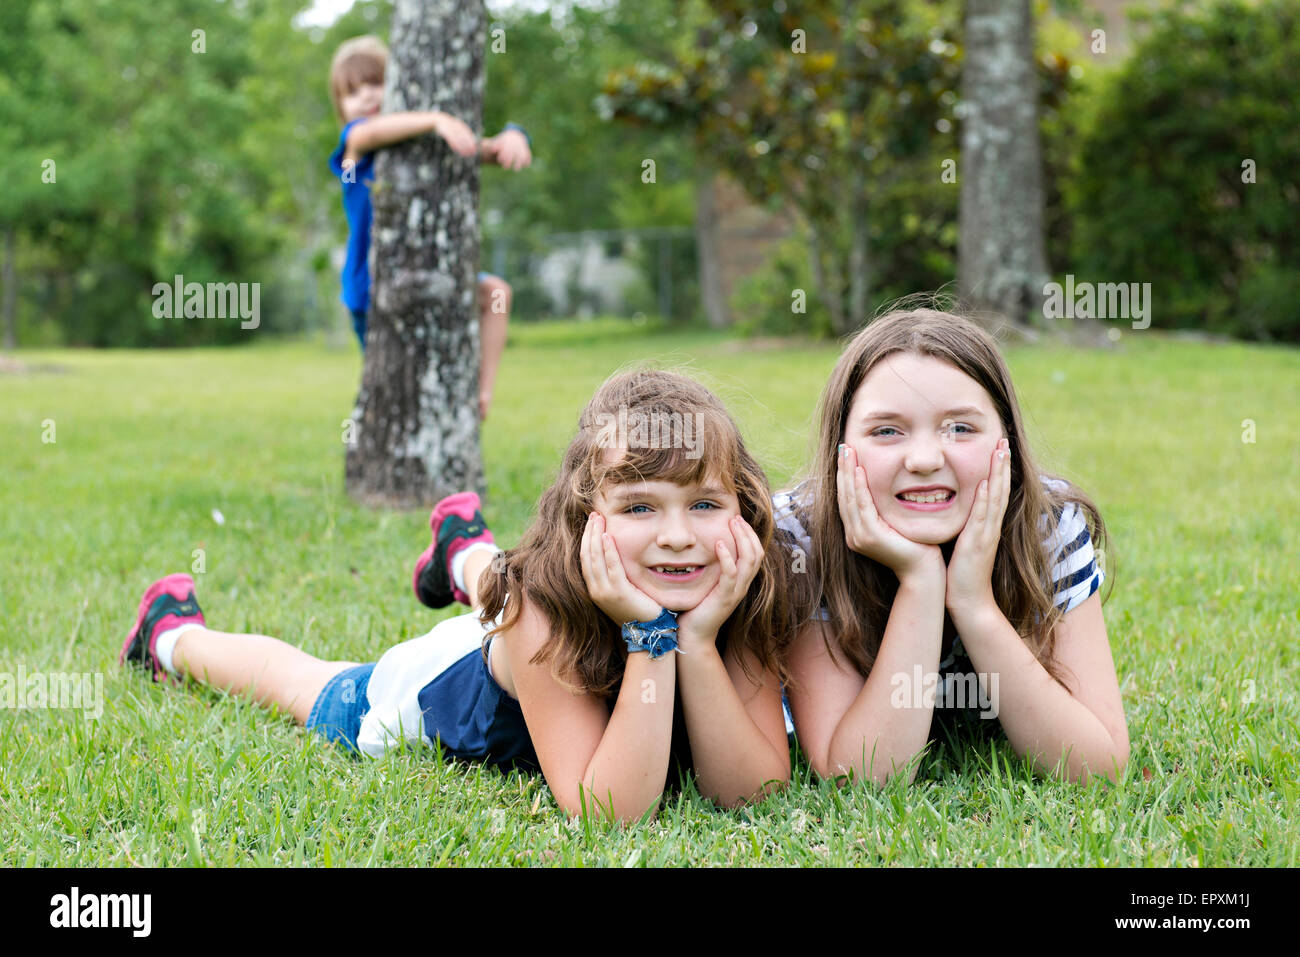 Junge Mädchen, die Verlegung auf dem Rasen, während ihre jüngere Schwester an einem Baum im Hintergrund hängt Stockfoto